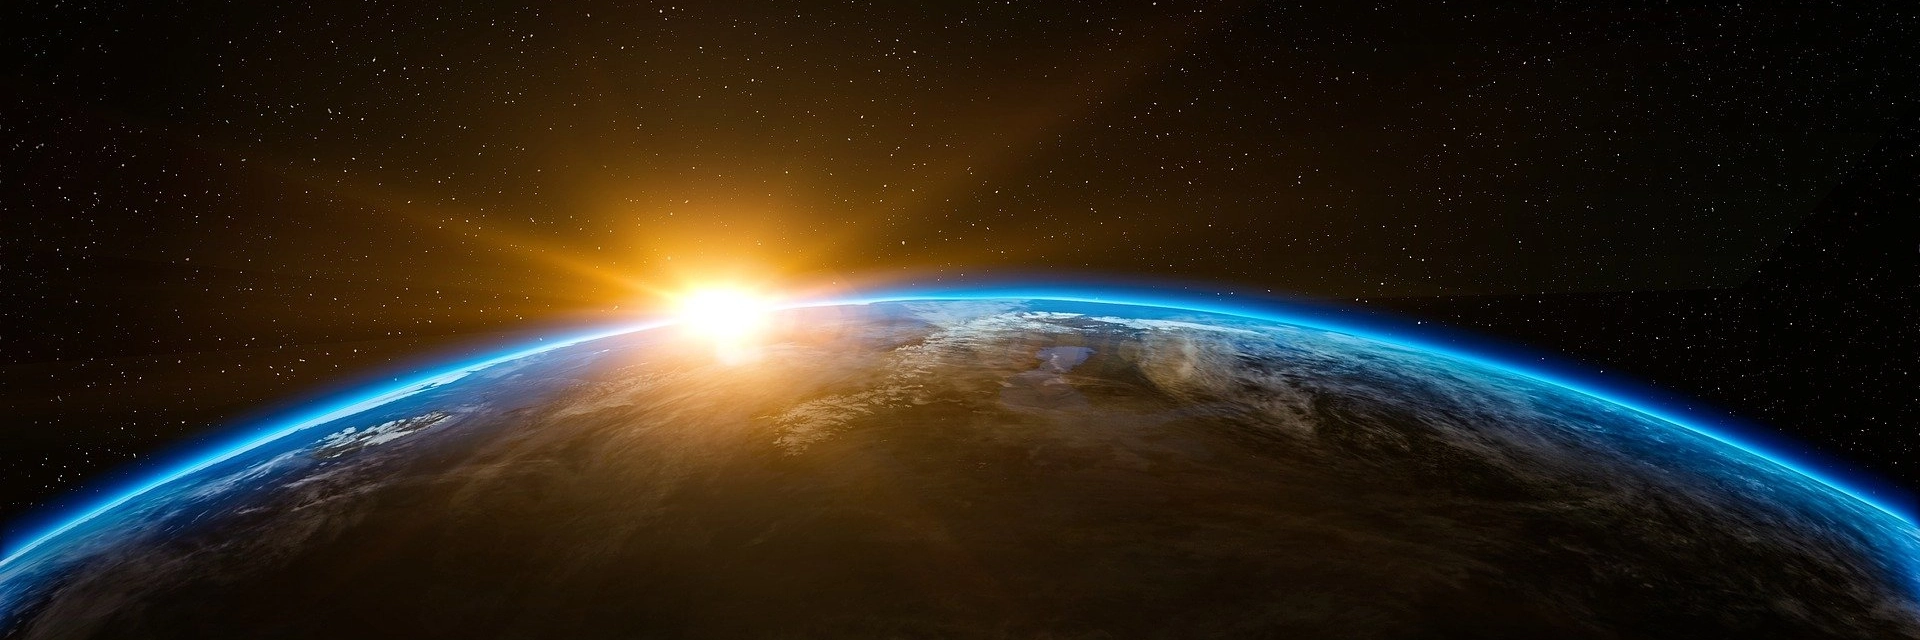 Viaggi spirituali: immagine del pianeta terra col sole che sorge